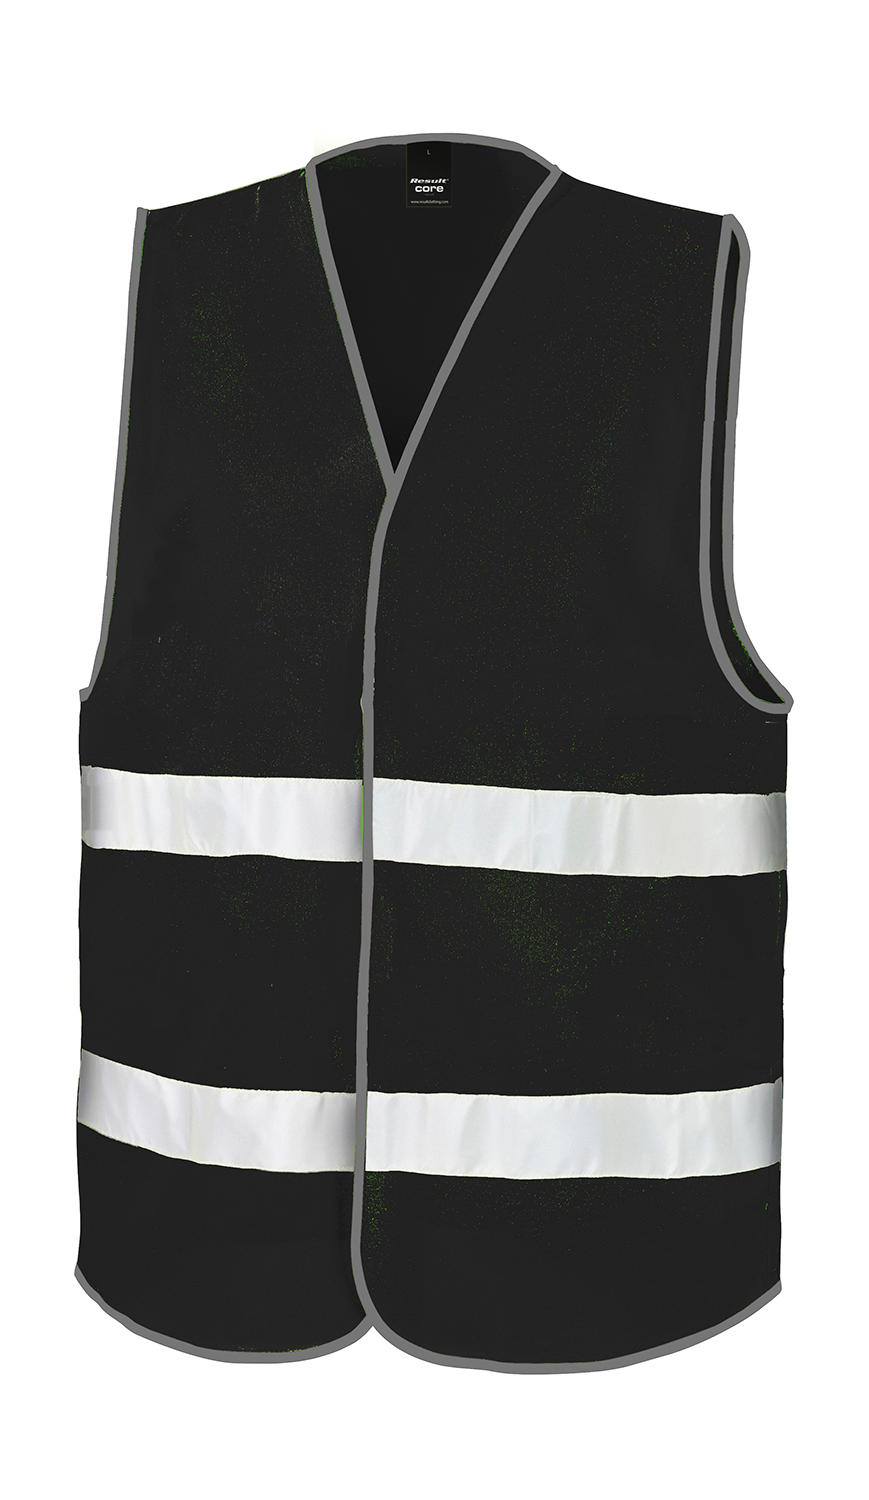 Core Enhanced Visibility Vest - black